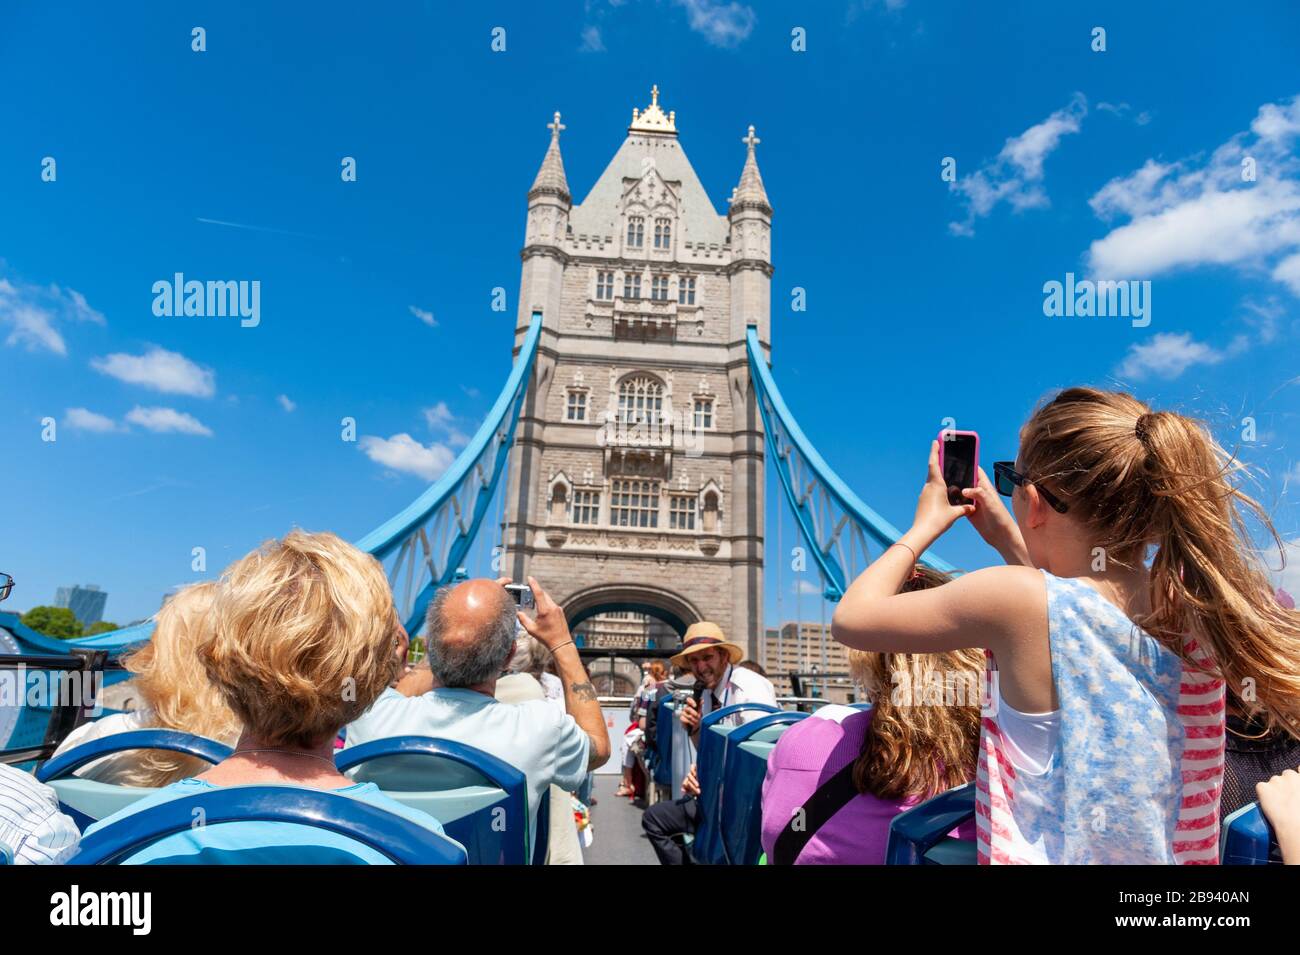 Los turistas en open top double decker Original London Sightseeing Tour bus cruzando el puente de la torre, Londres, Reino Unido. Foto de stock